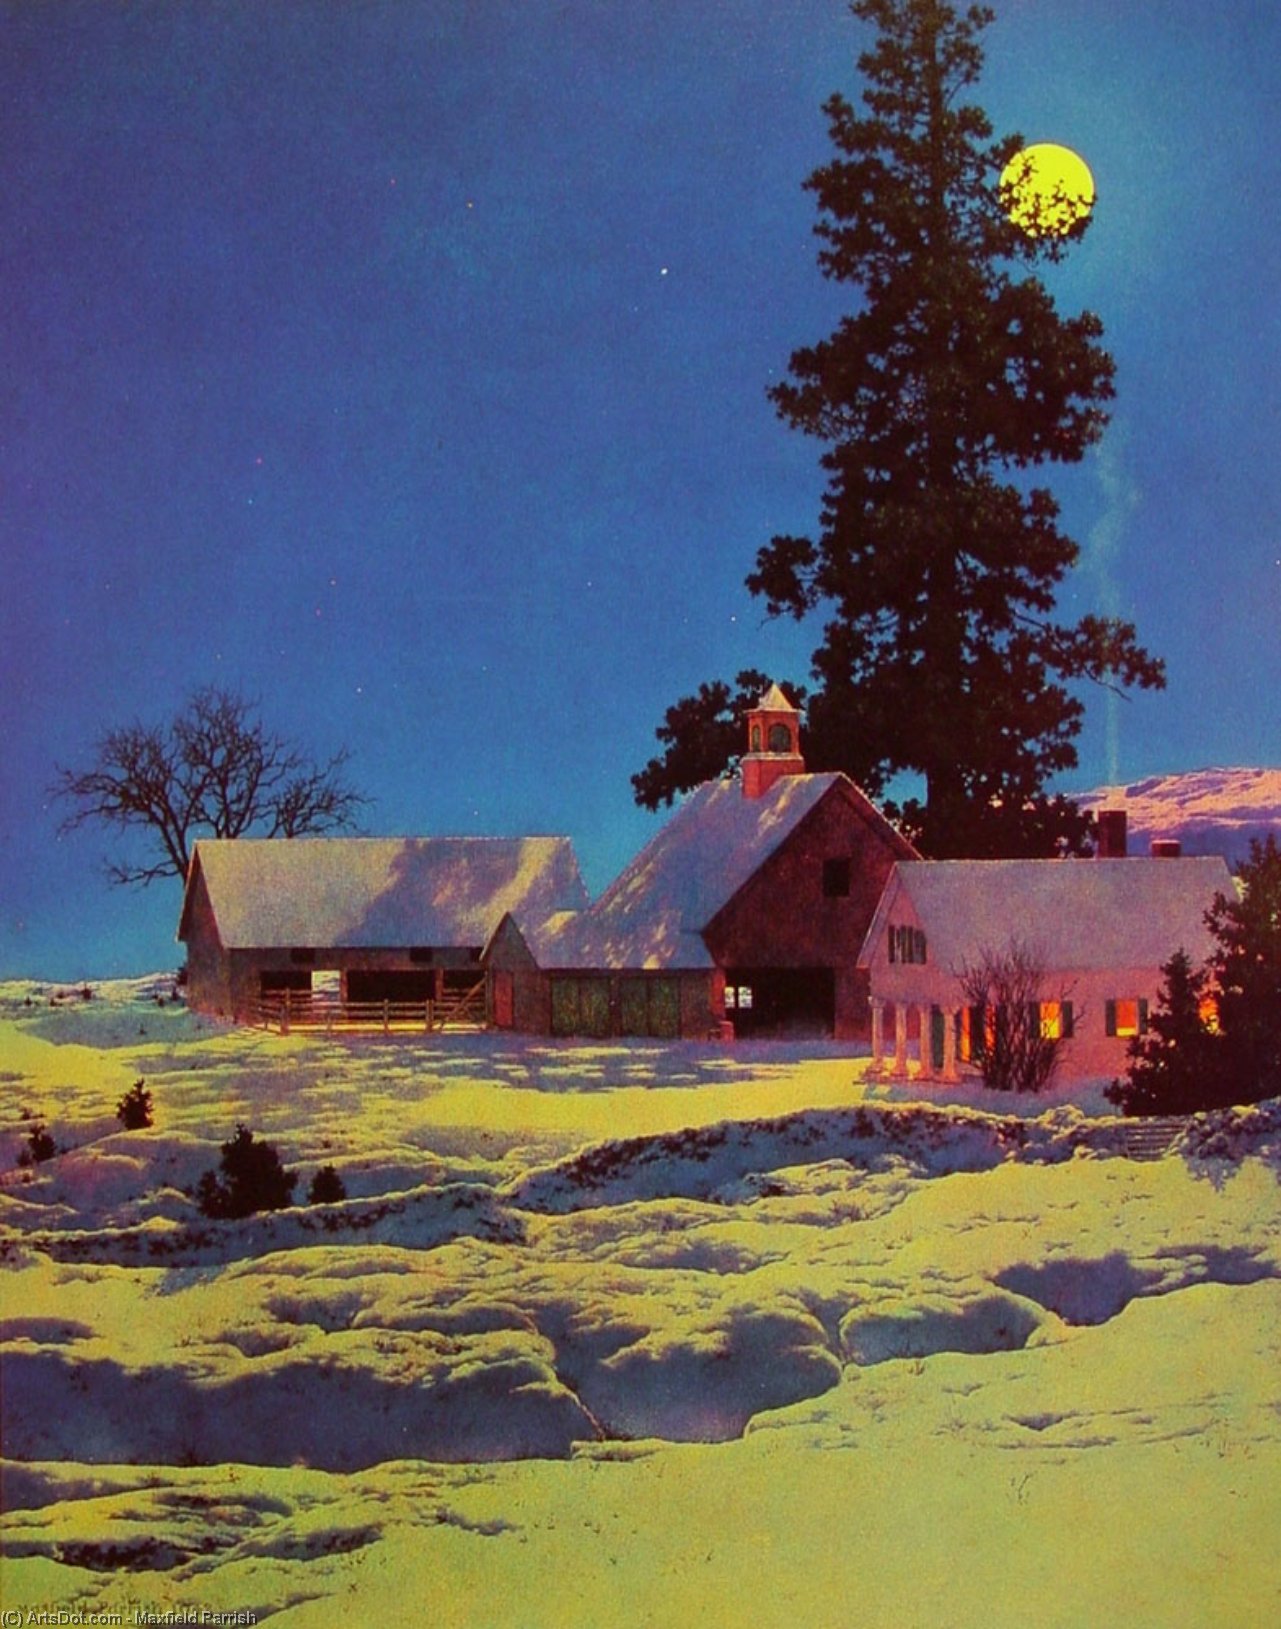 Wikoo.org - موسوعة الفنون الجميلة - اللوحة، العمل الفني Maxfield Parrish - Moonlit Night, Winter